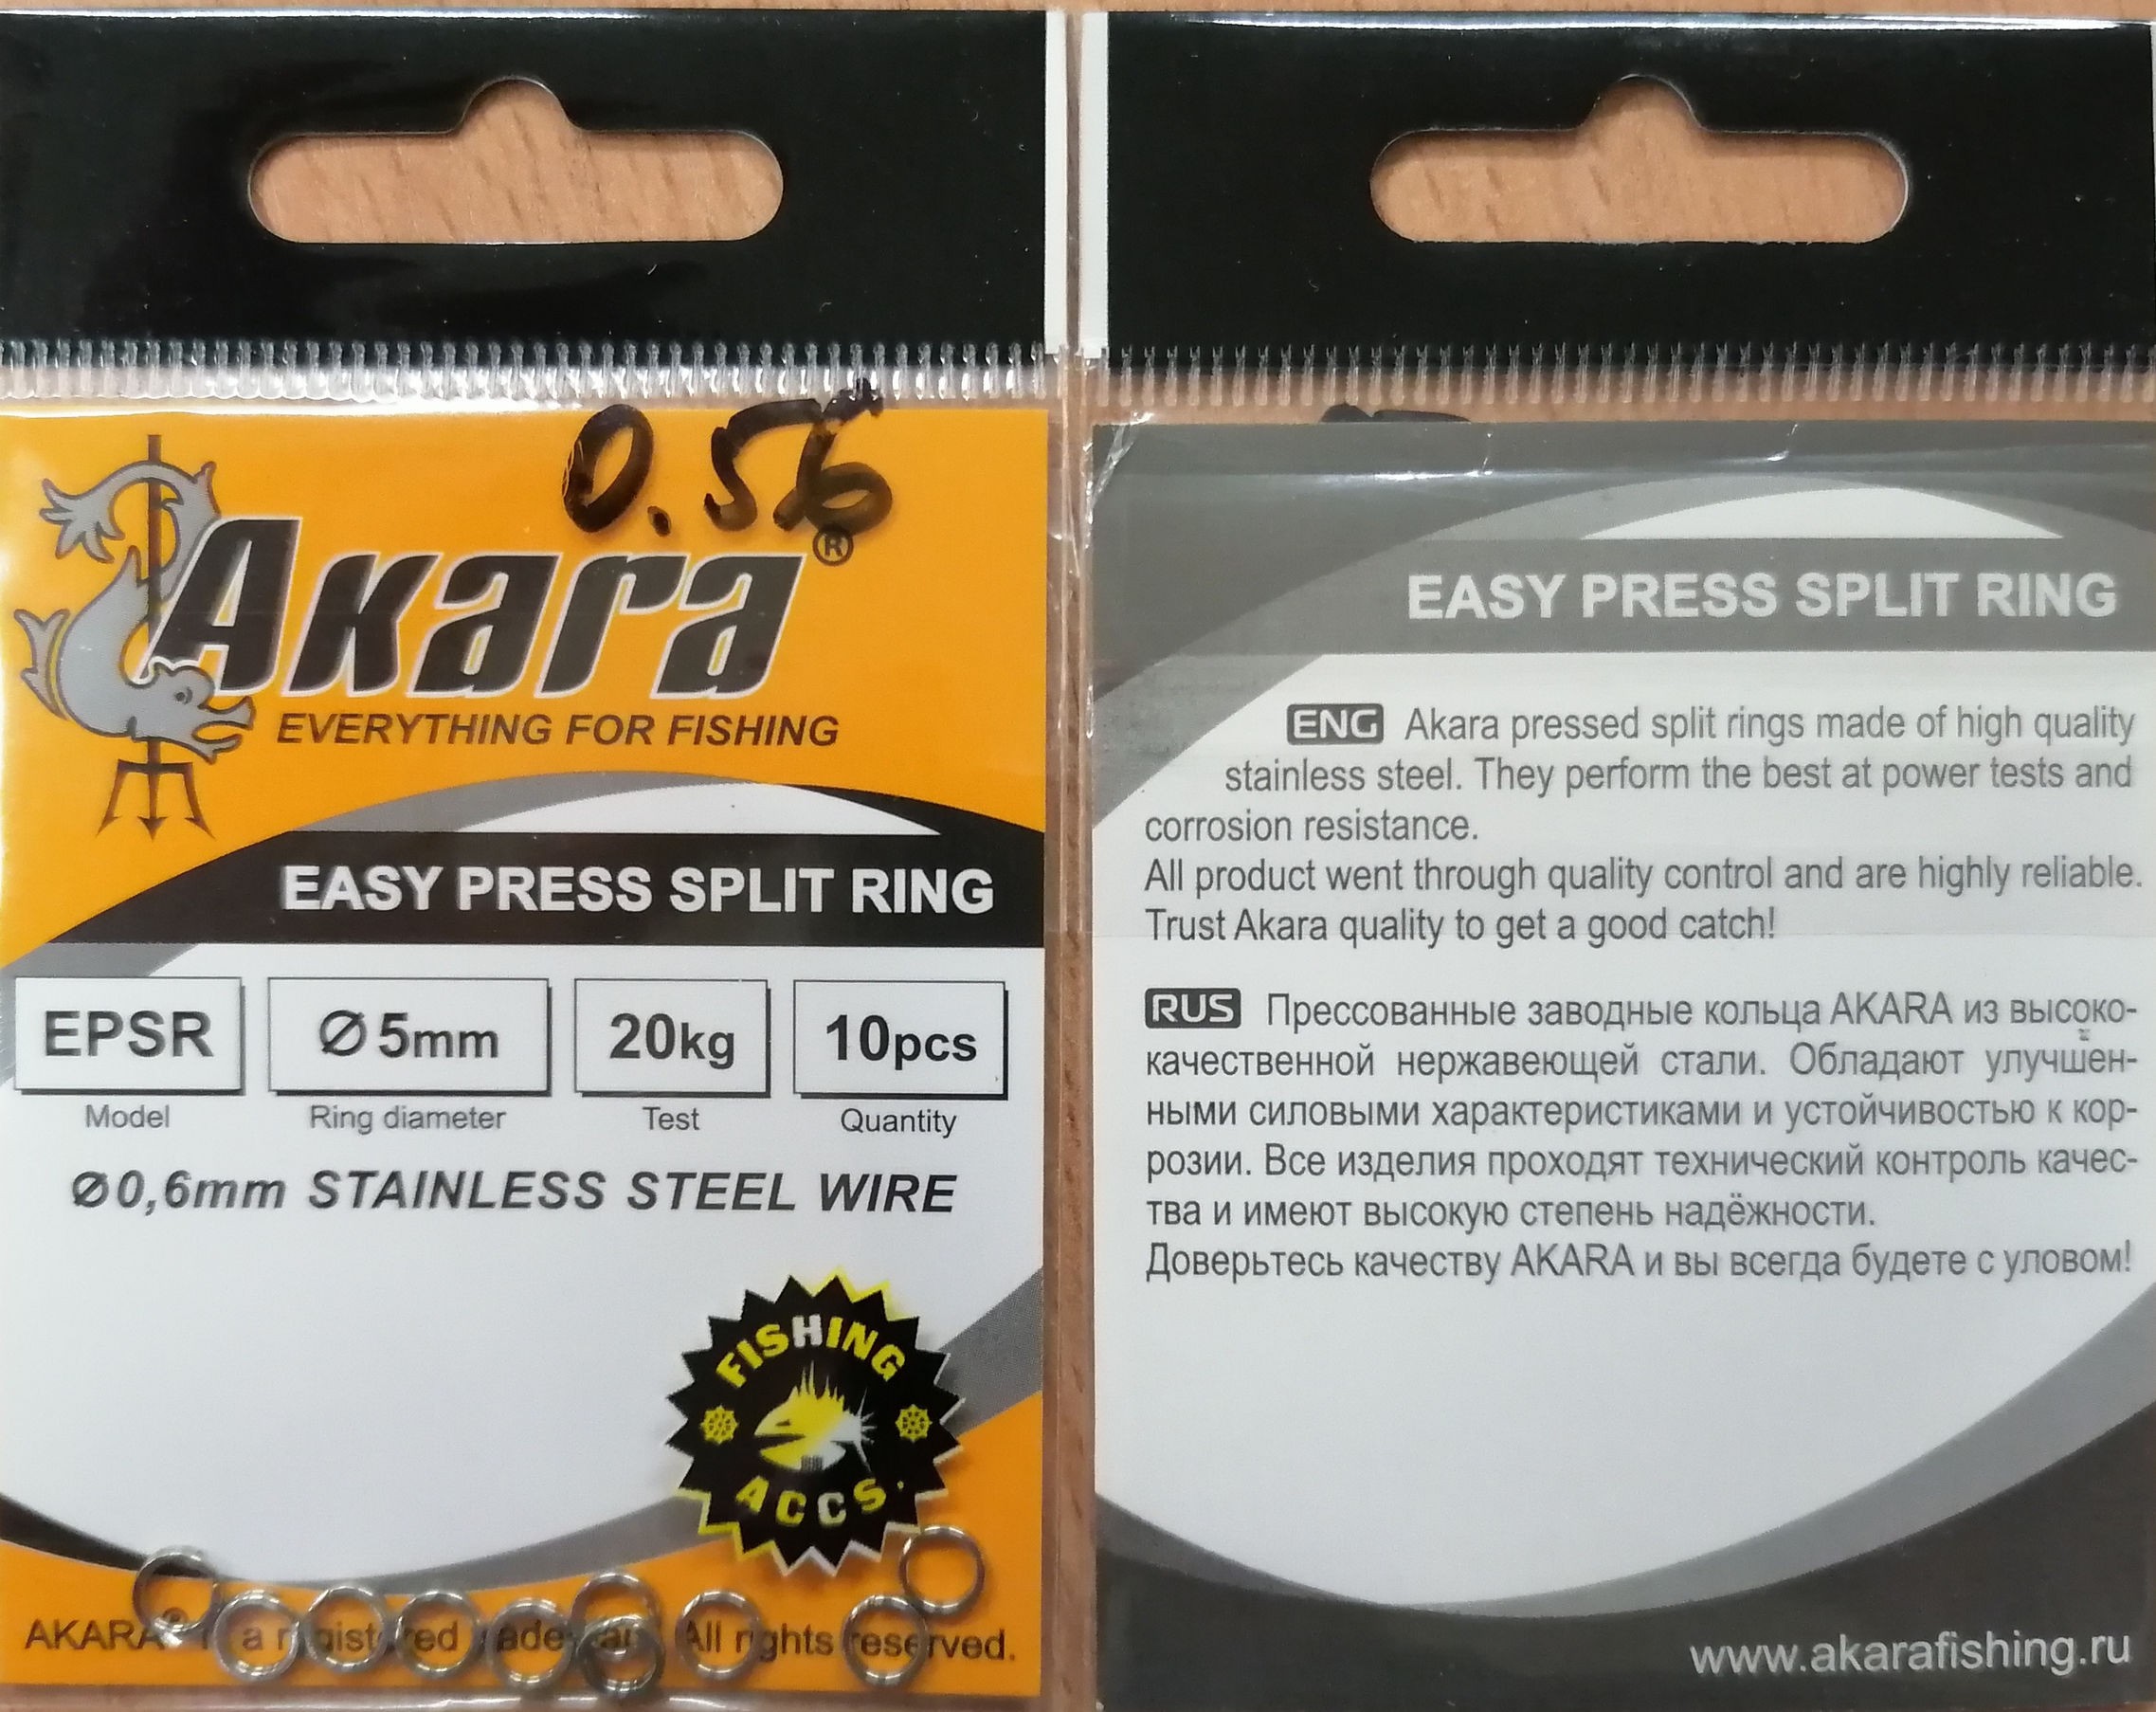 Akara easy press split ring 5